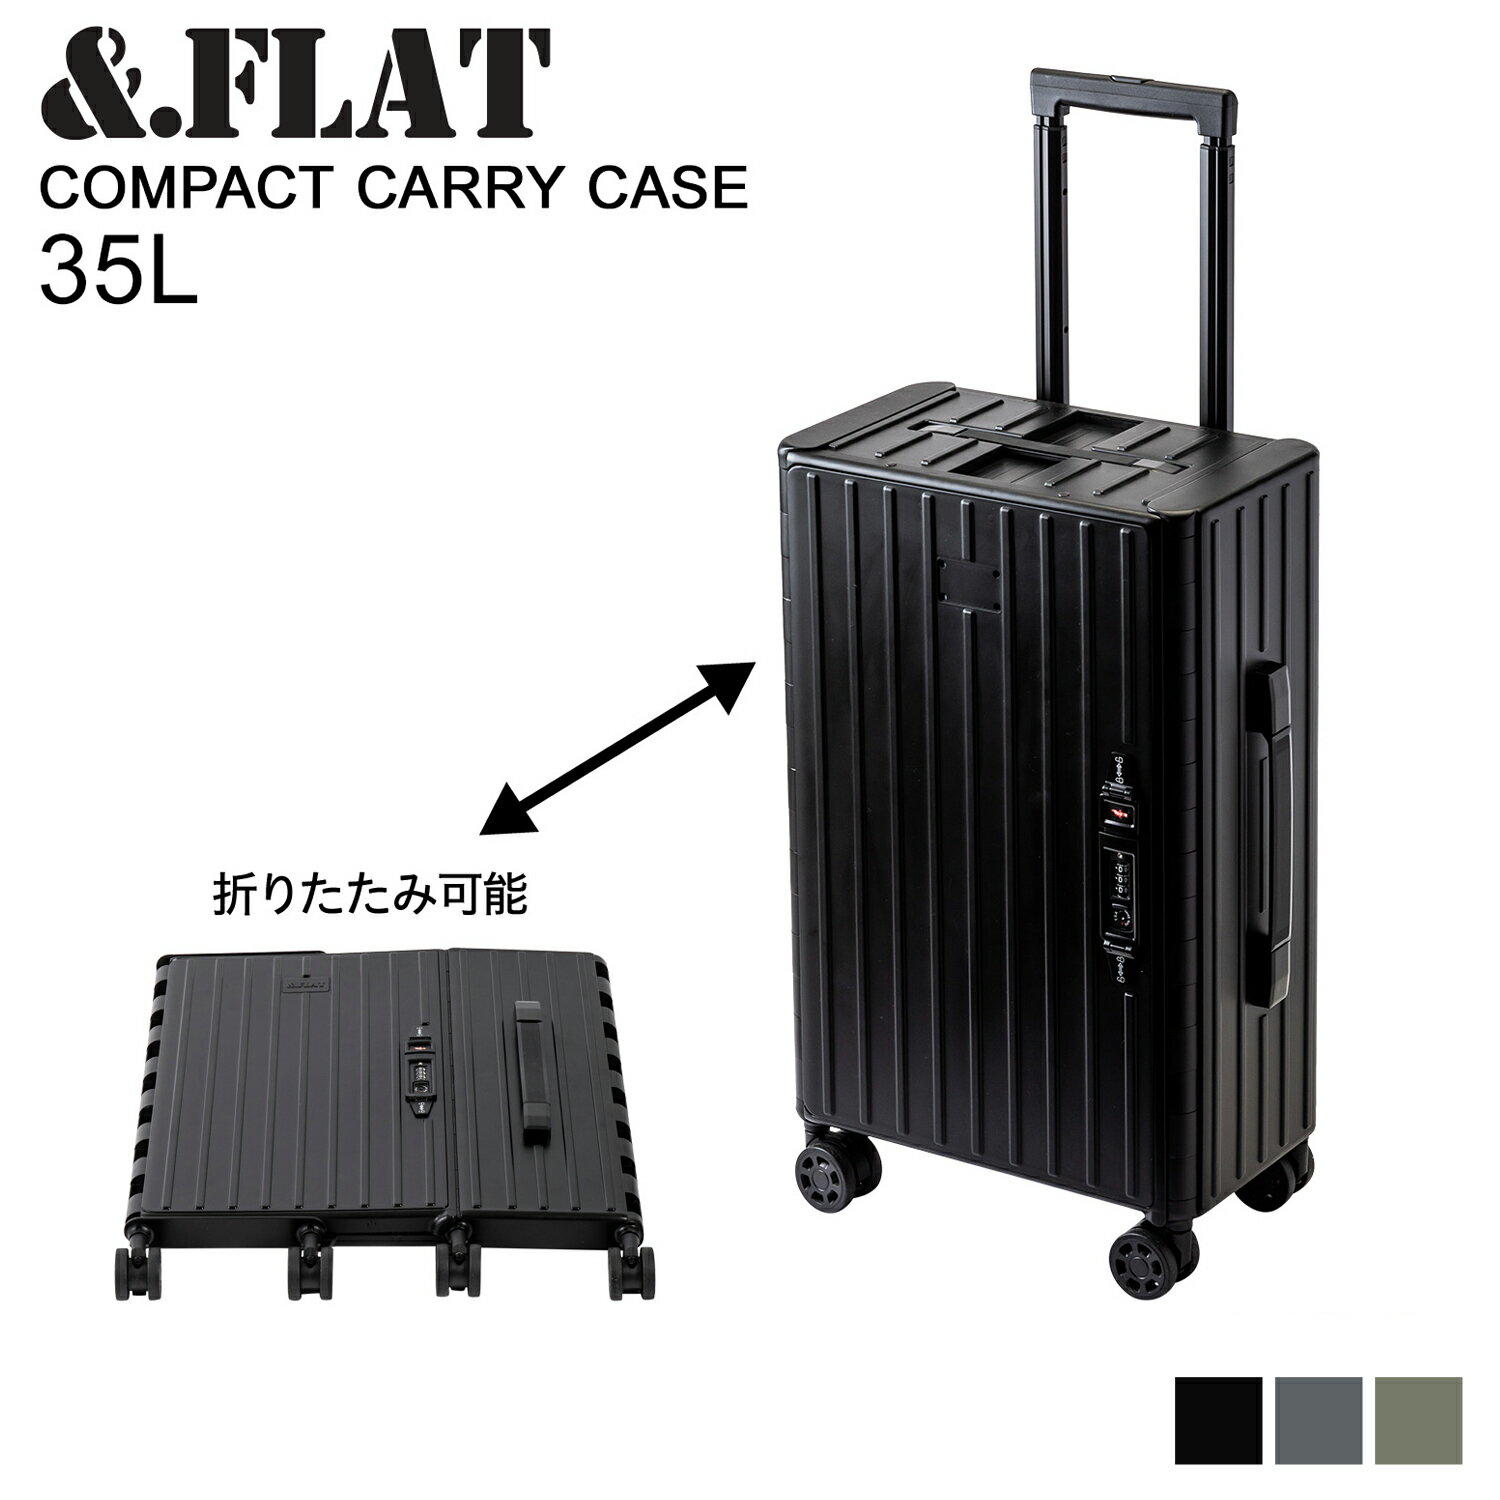 FLAT アンドフラット キャリーケース スーツケース キャリーバッグ メンズ レディース 35L 折り畳める 機内持ち込み COMPACT CARRY CASE MATTE COLOR ブラック グレー カーキ 黒 FL14-4-00002